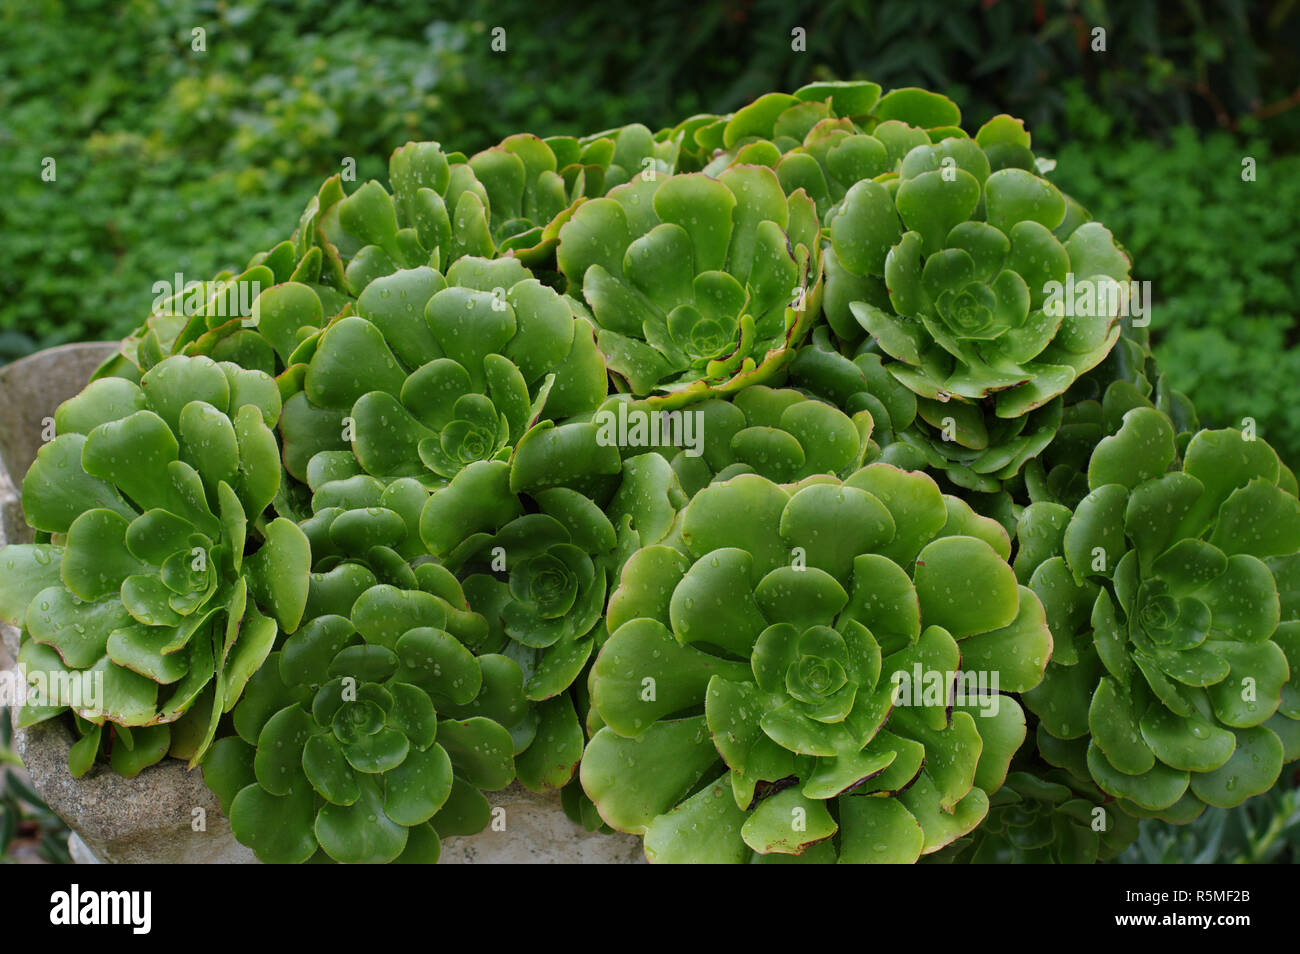 Le piante succulente in un giardino (Piante succulente | Dicotiledoni, forse Echeveria sp.) Foto Stock